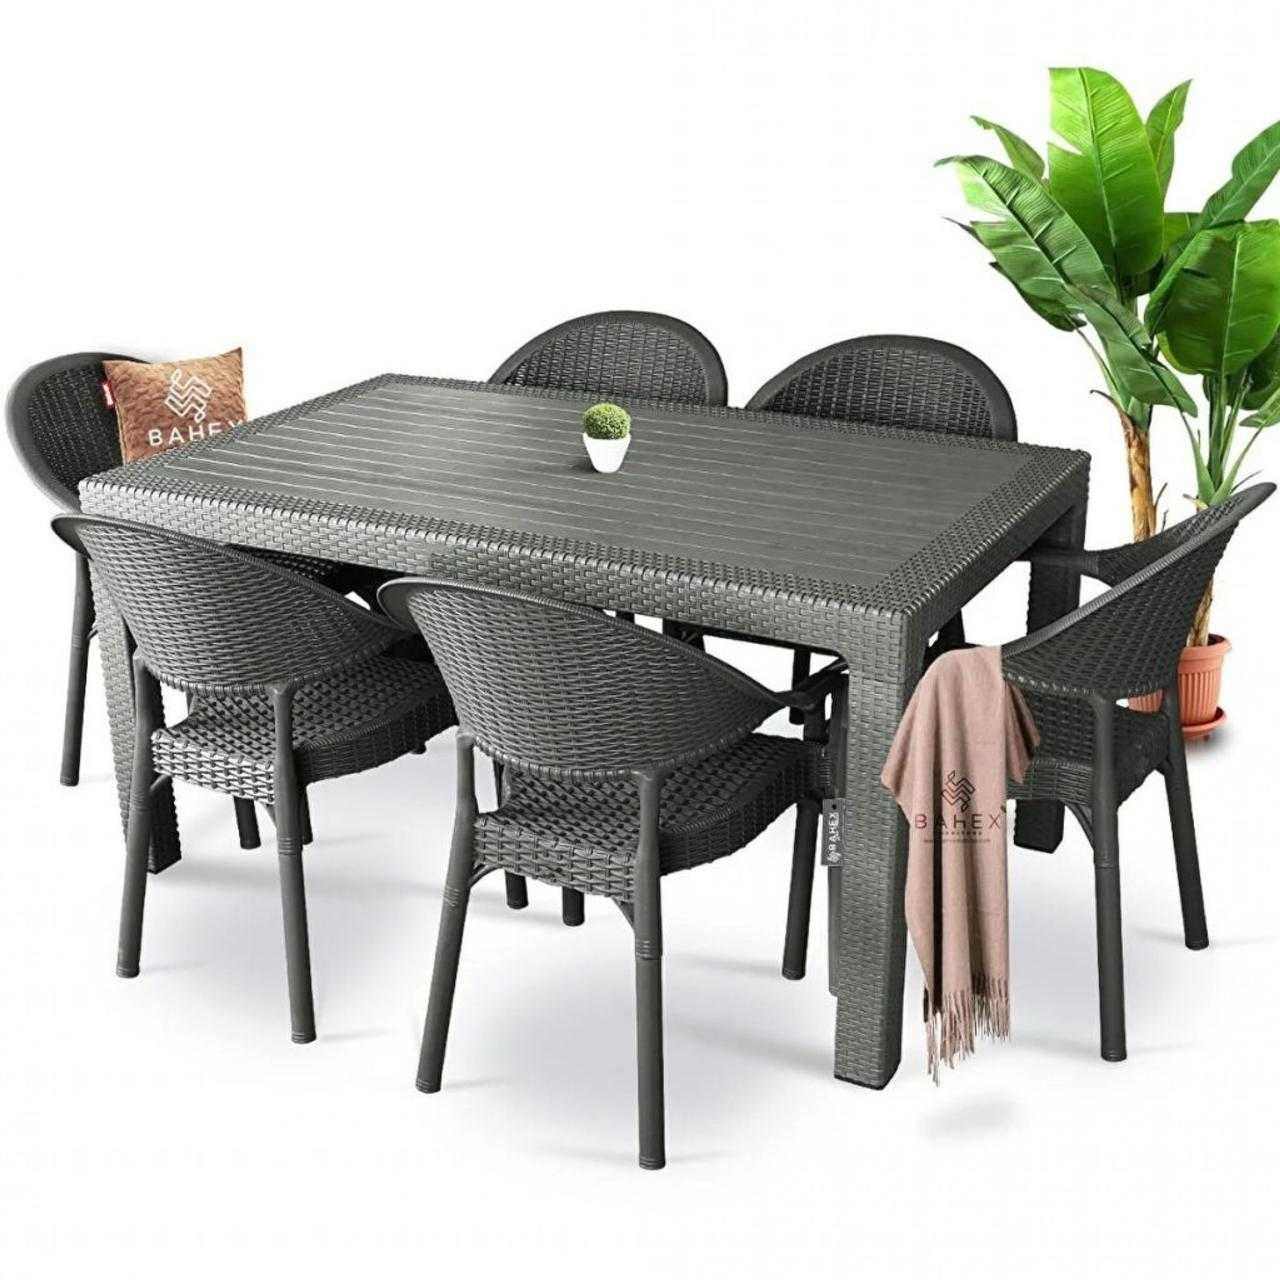 Високо качествен градински комплект от маса и 6 овални стола два цвята